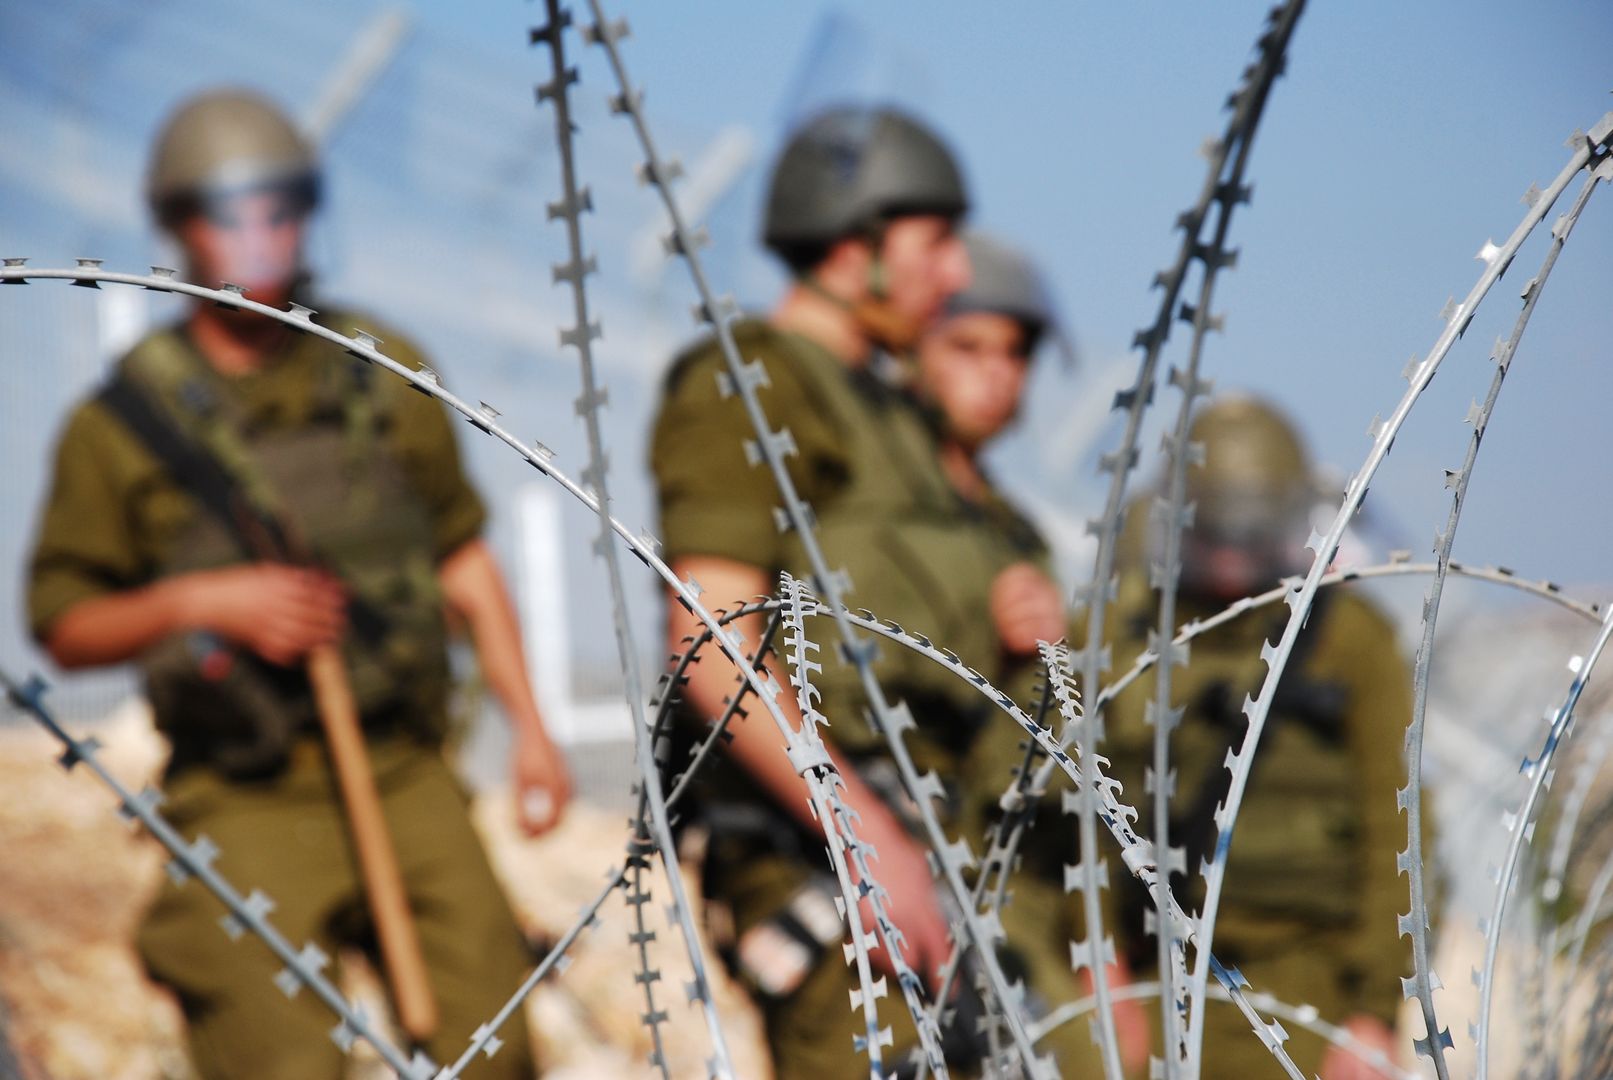 Izrael pod presją USA. Wycofał wojska z południa Strefy Gazy